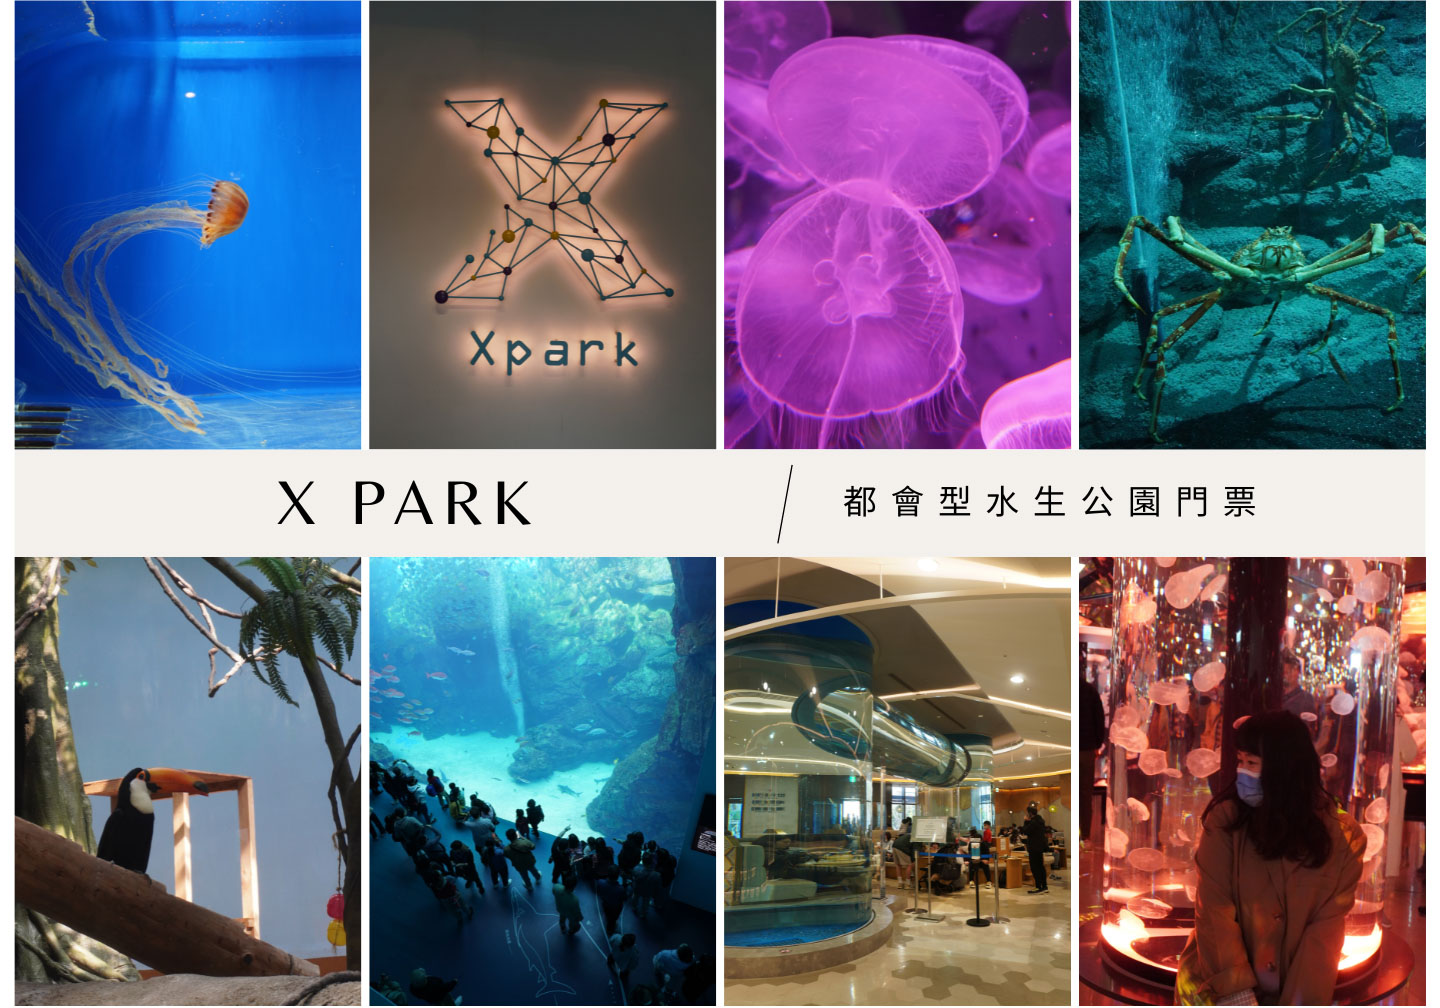 桃園青埔Xpark水族館,近高鐵站,門票優惠,水生公園